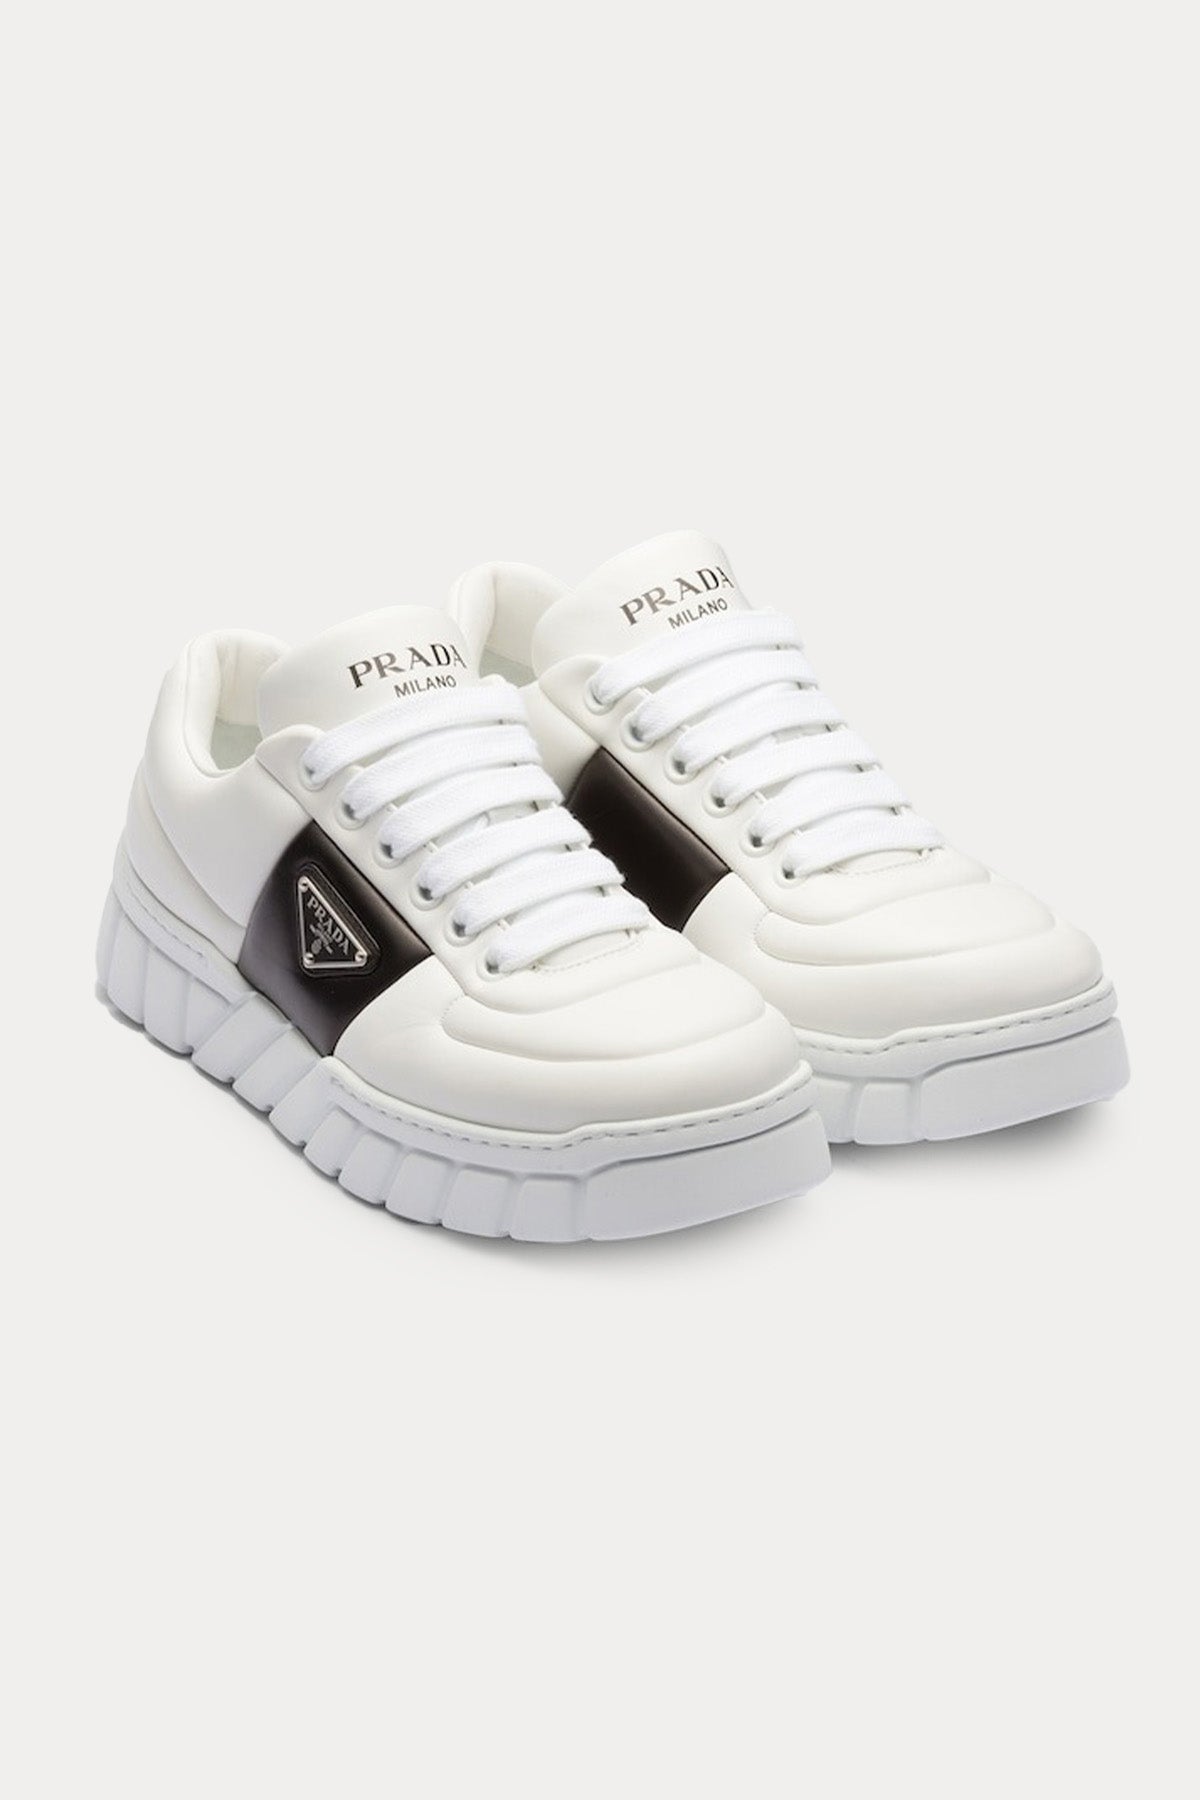 Prada Dolgulu Napa Deri Logolu Extralight Sneaker Ayakkabı